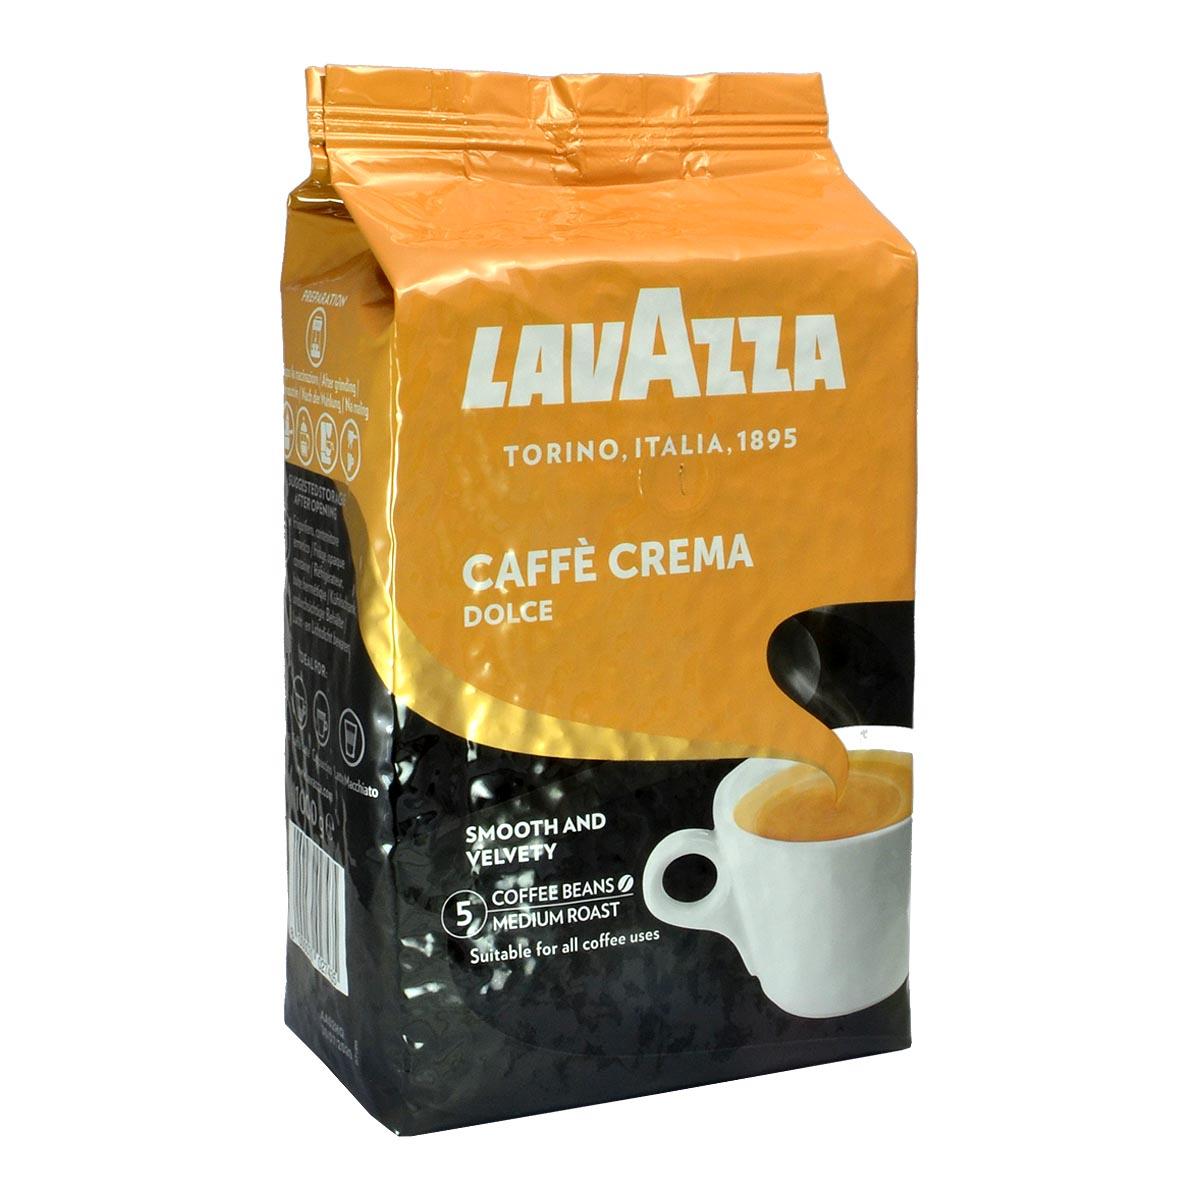 Café en grains Segafredo espresso CASA crema (1kg)